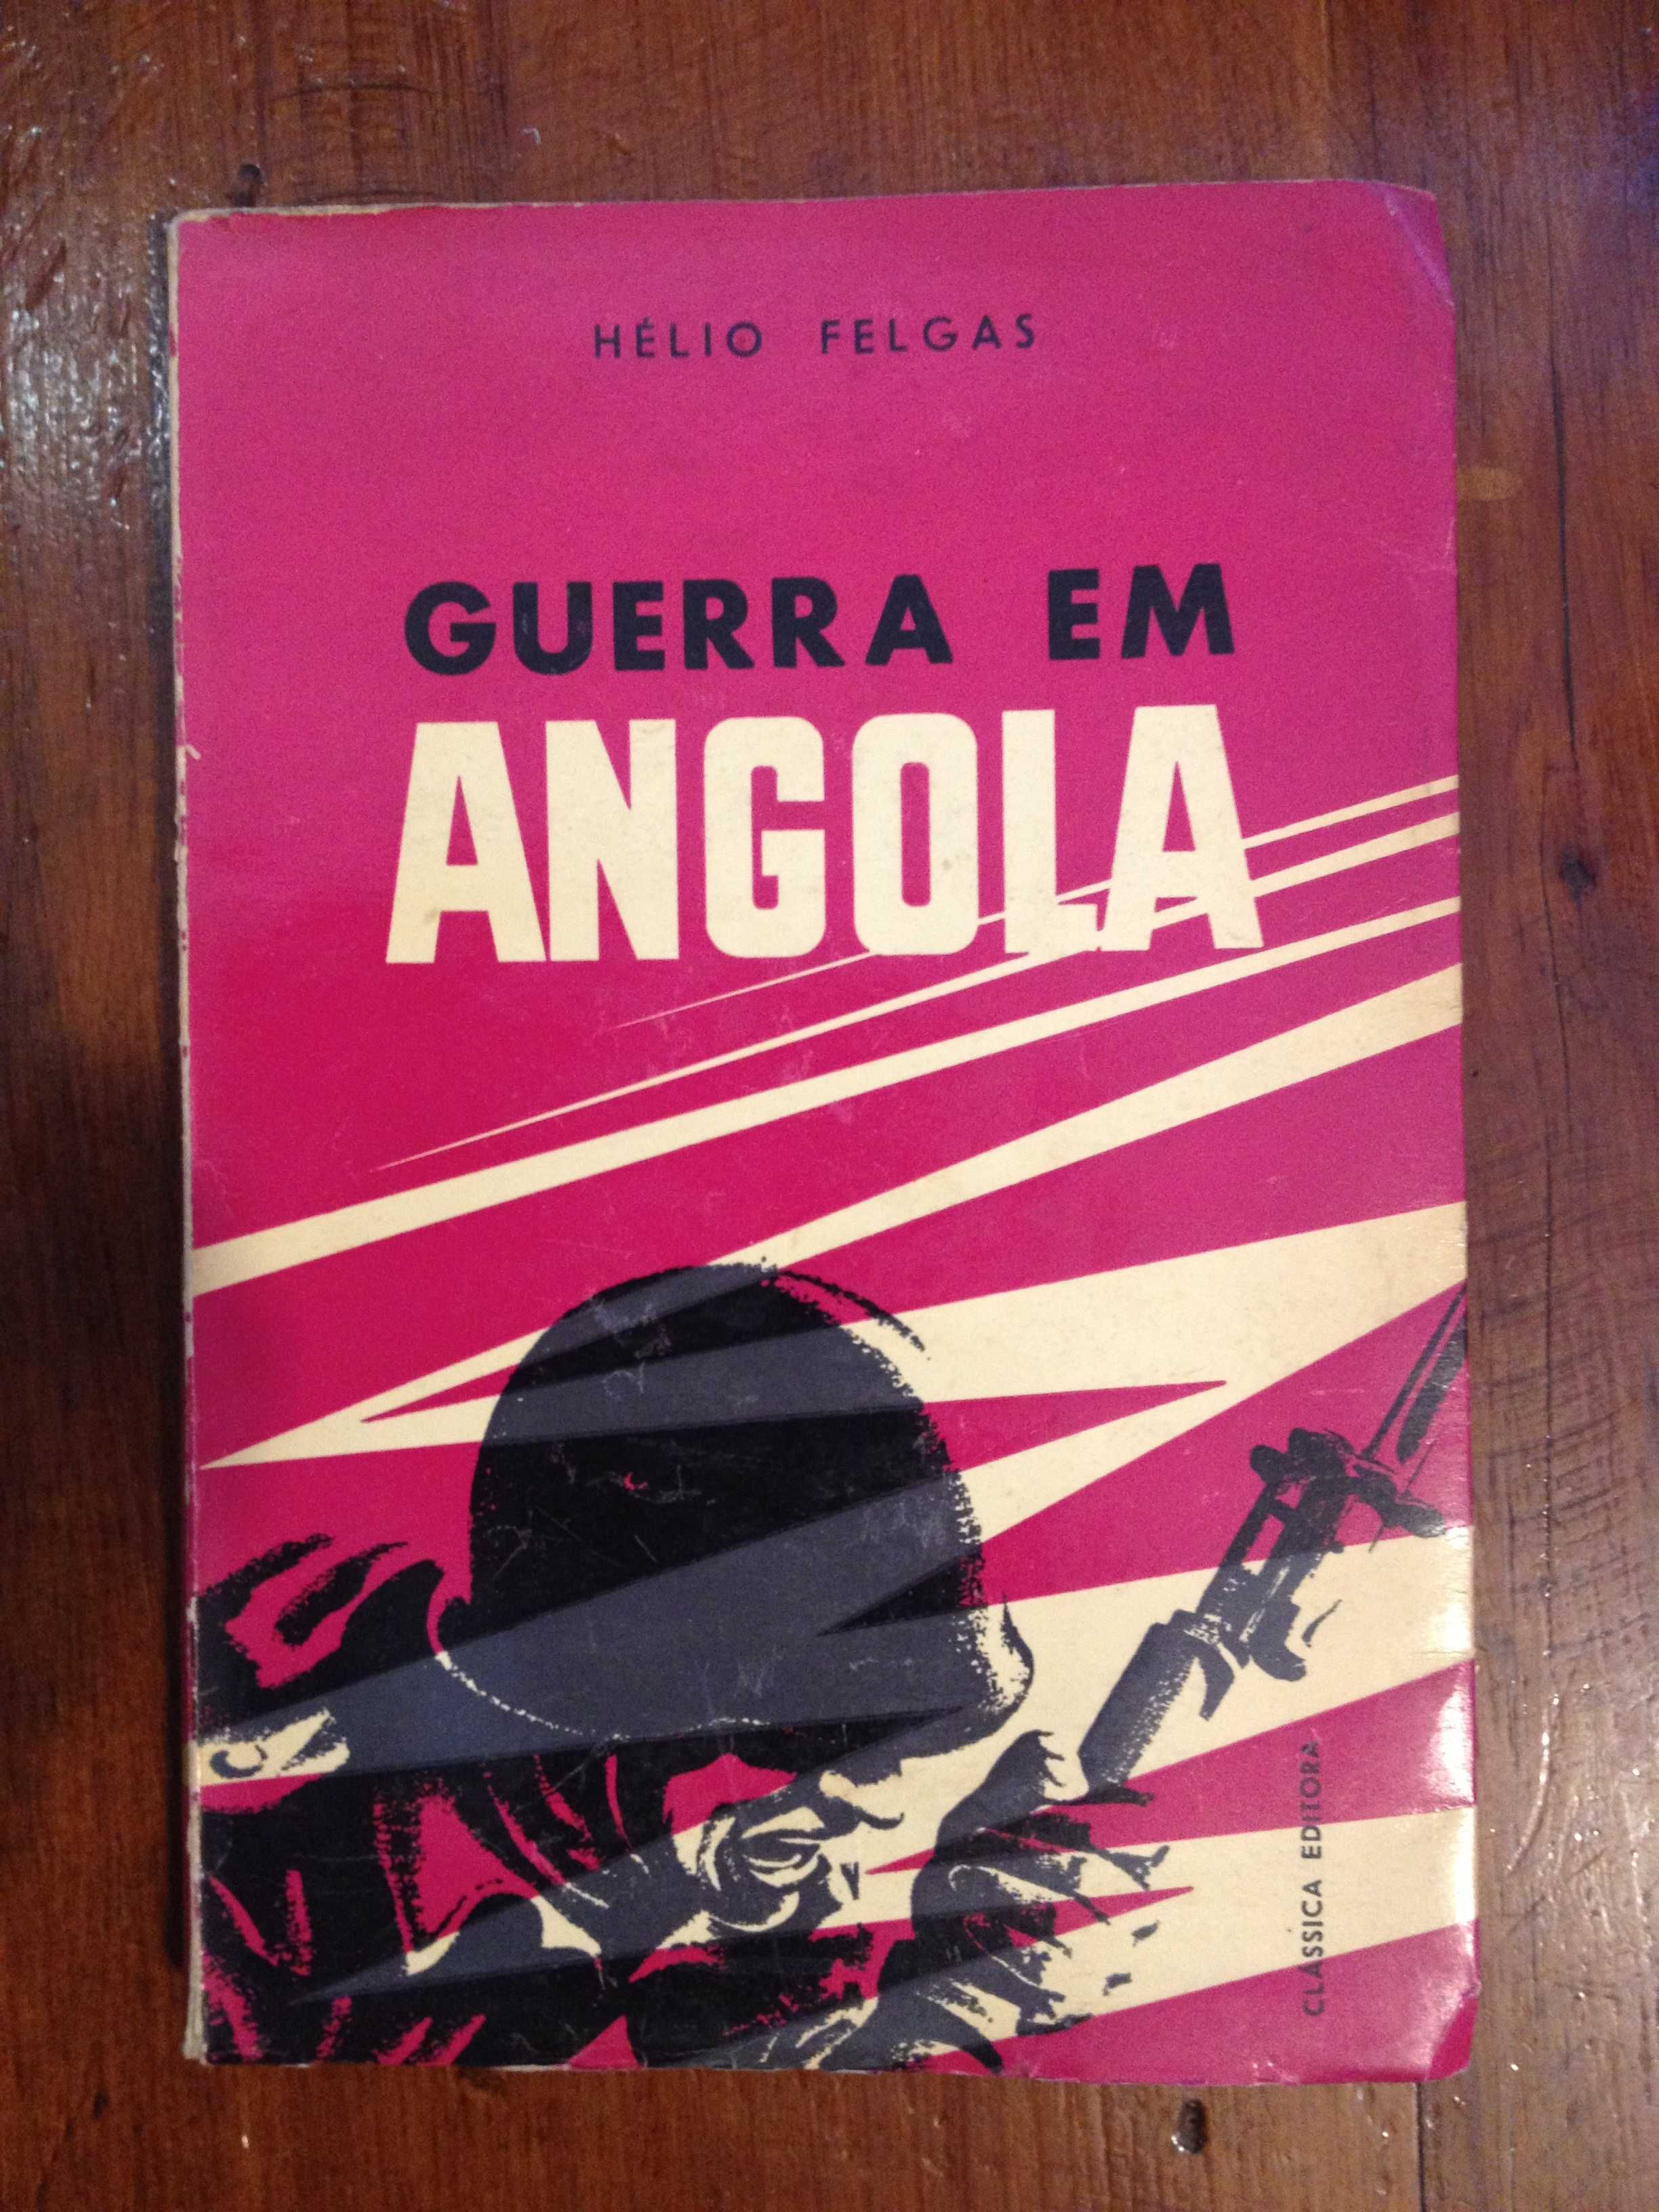 Hélio Felgas - Guerra em Angola